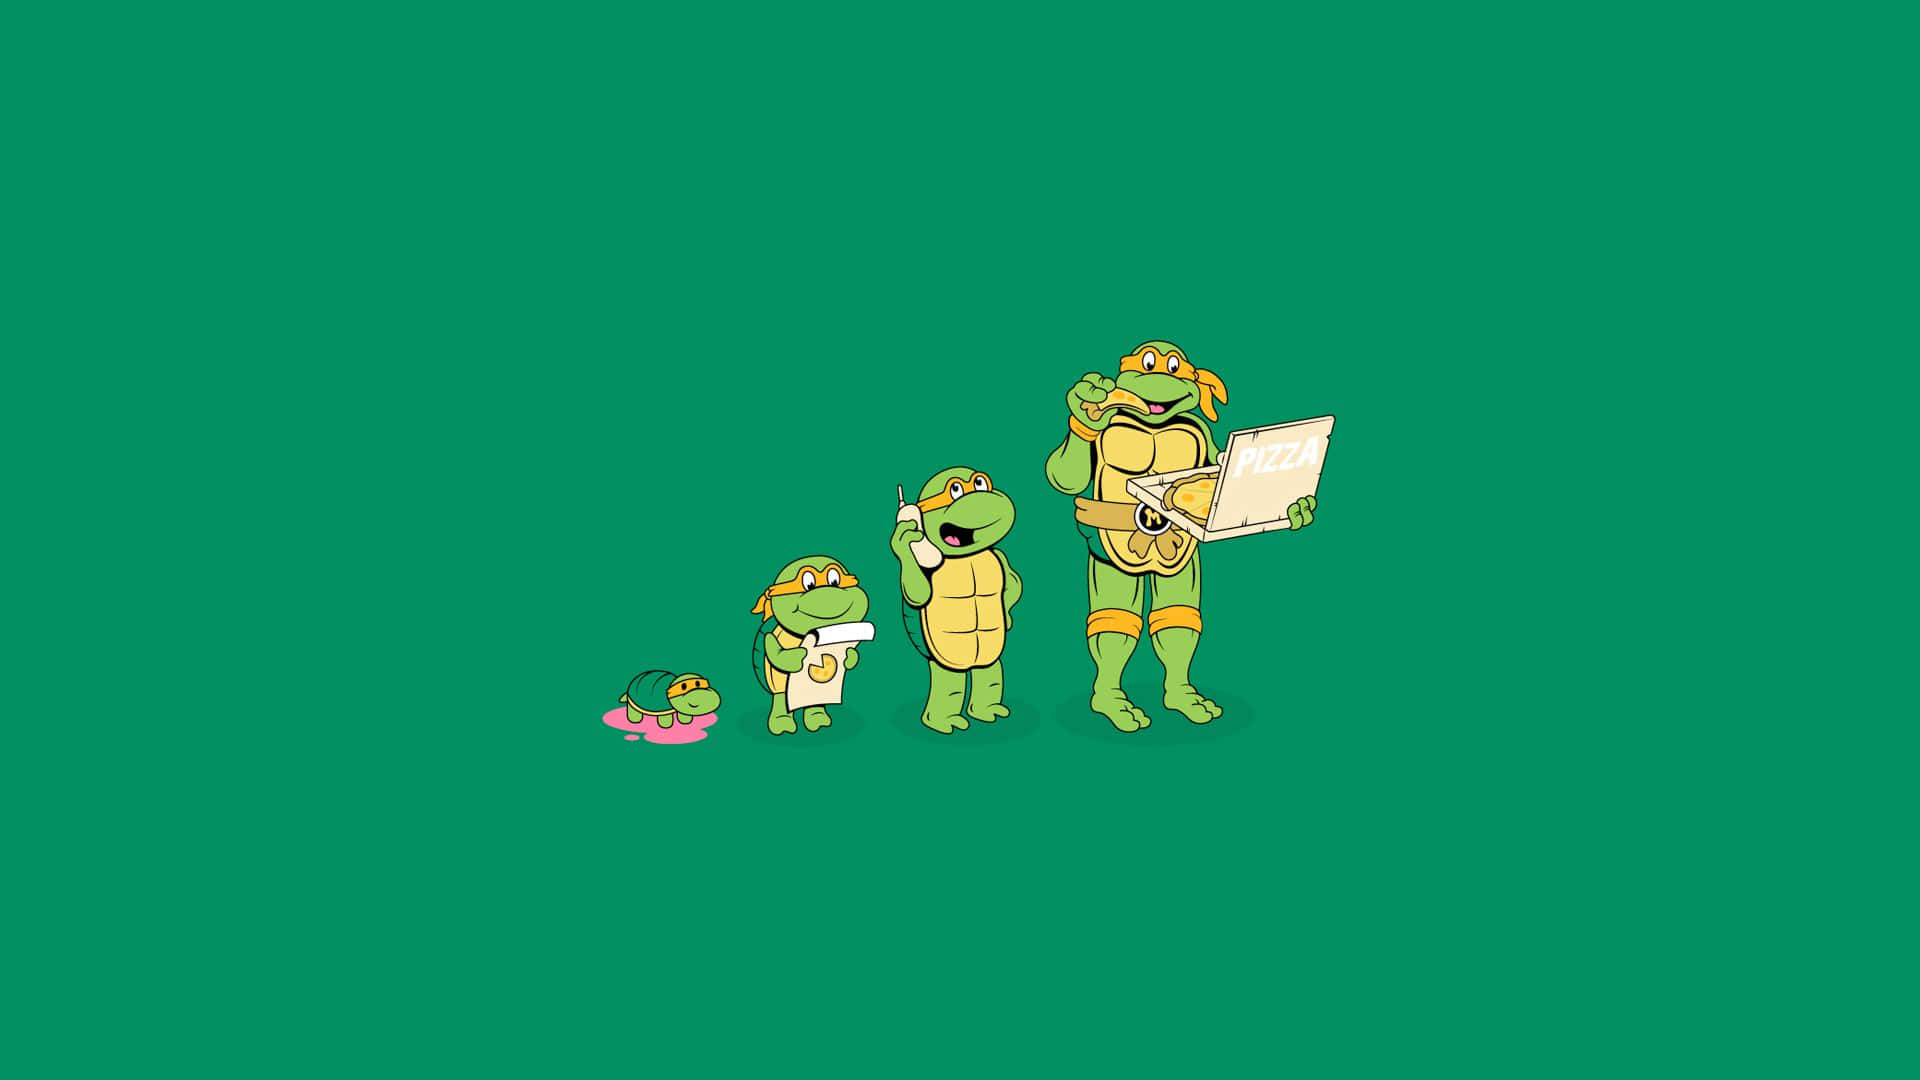 Cool Minimalist Ninja Turtles Background